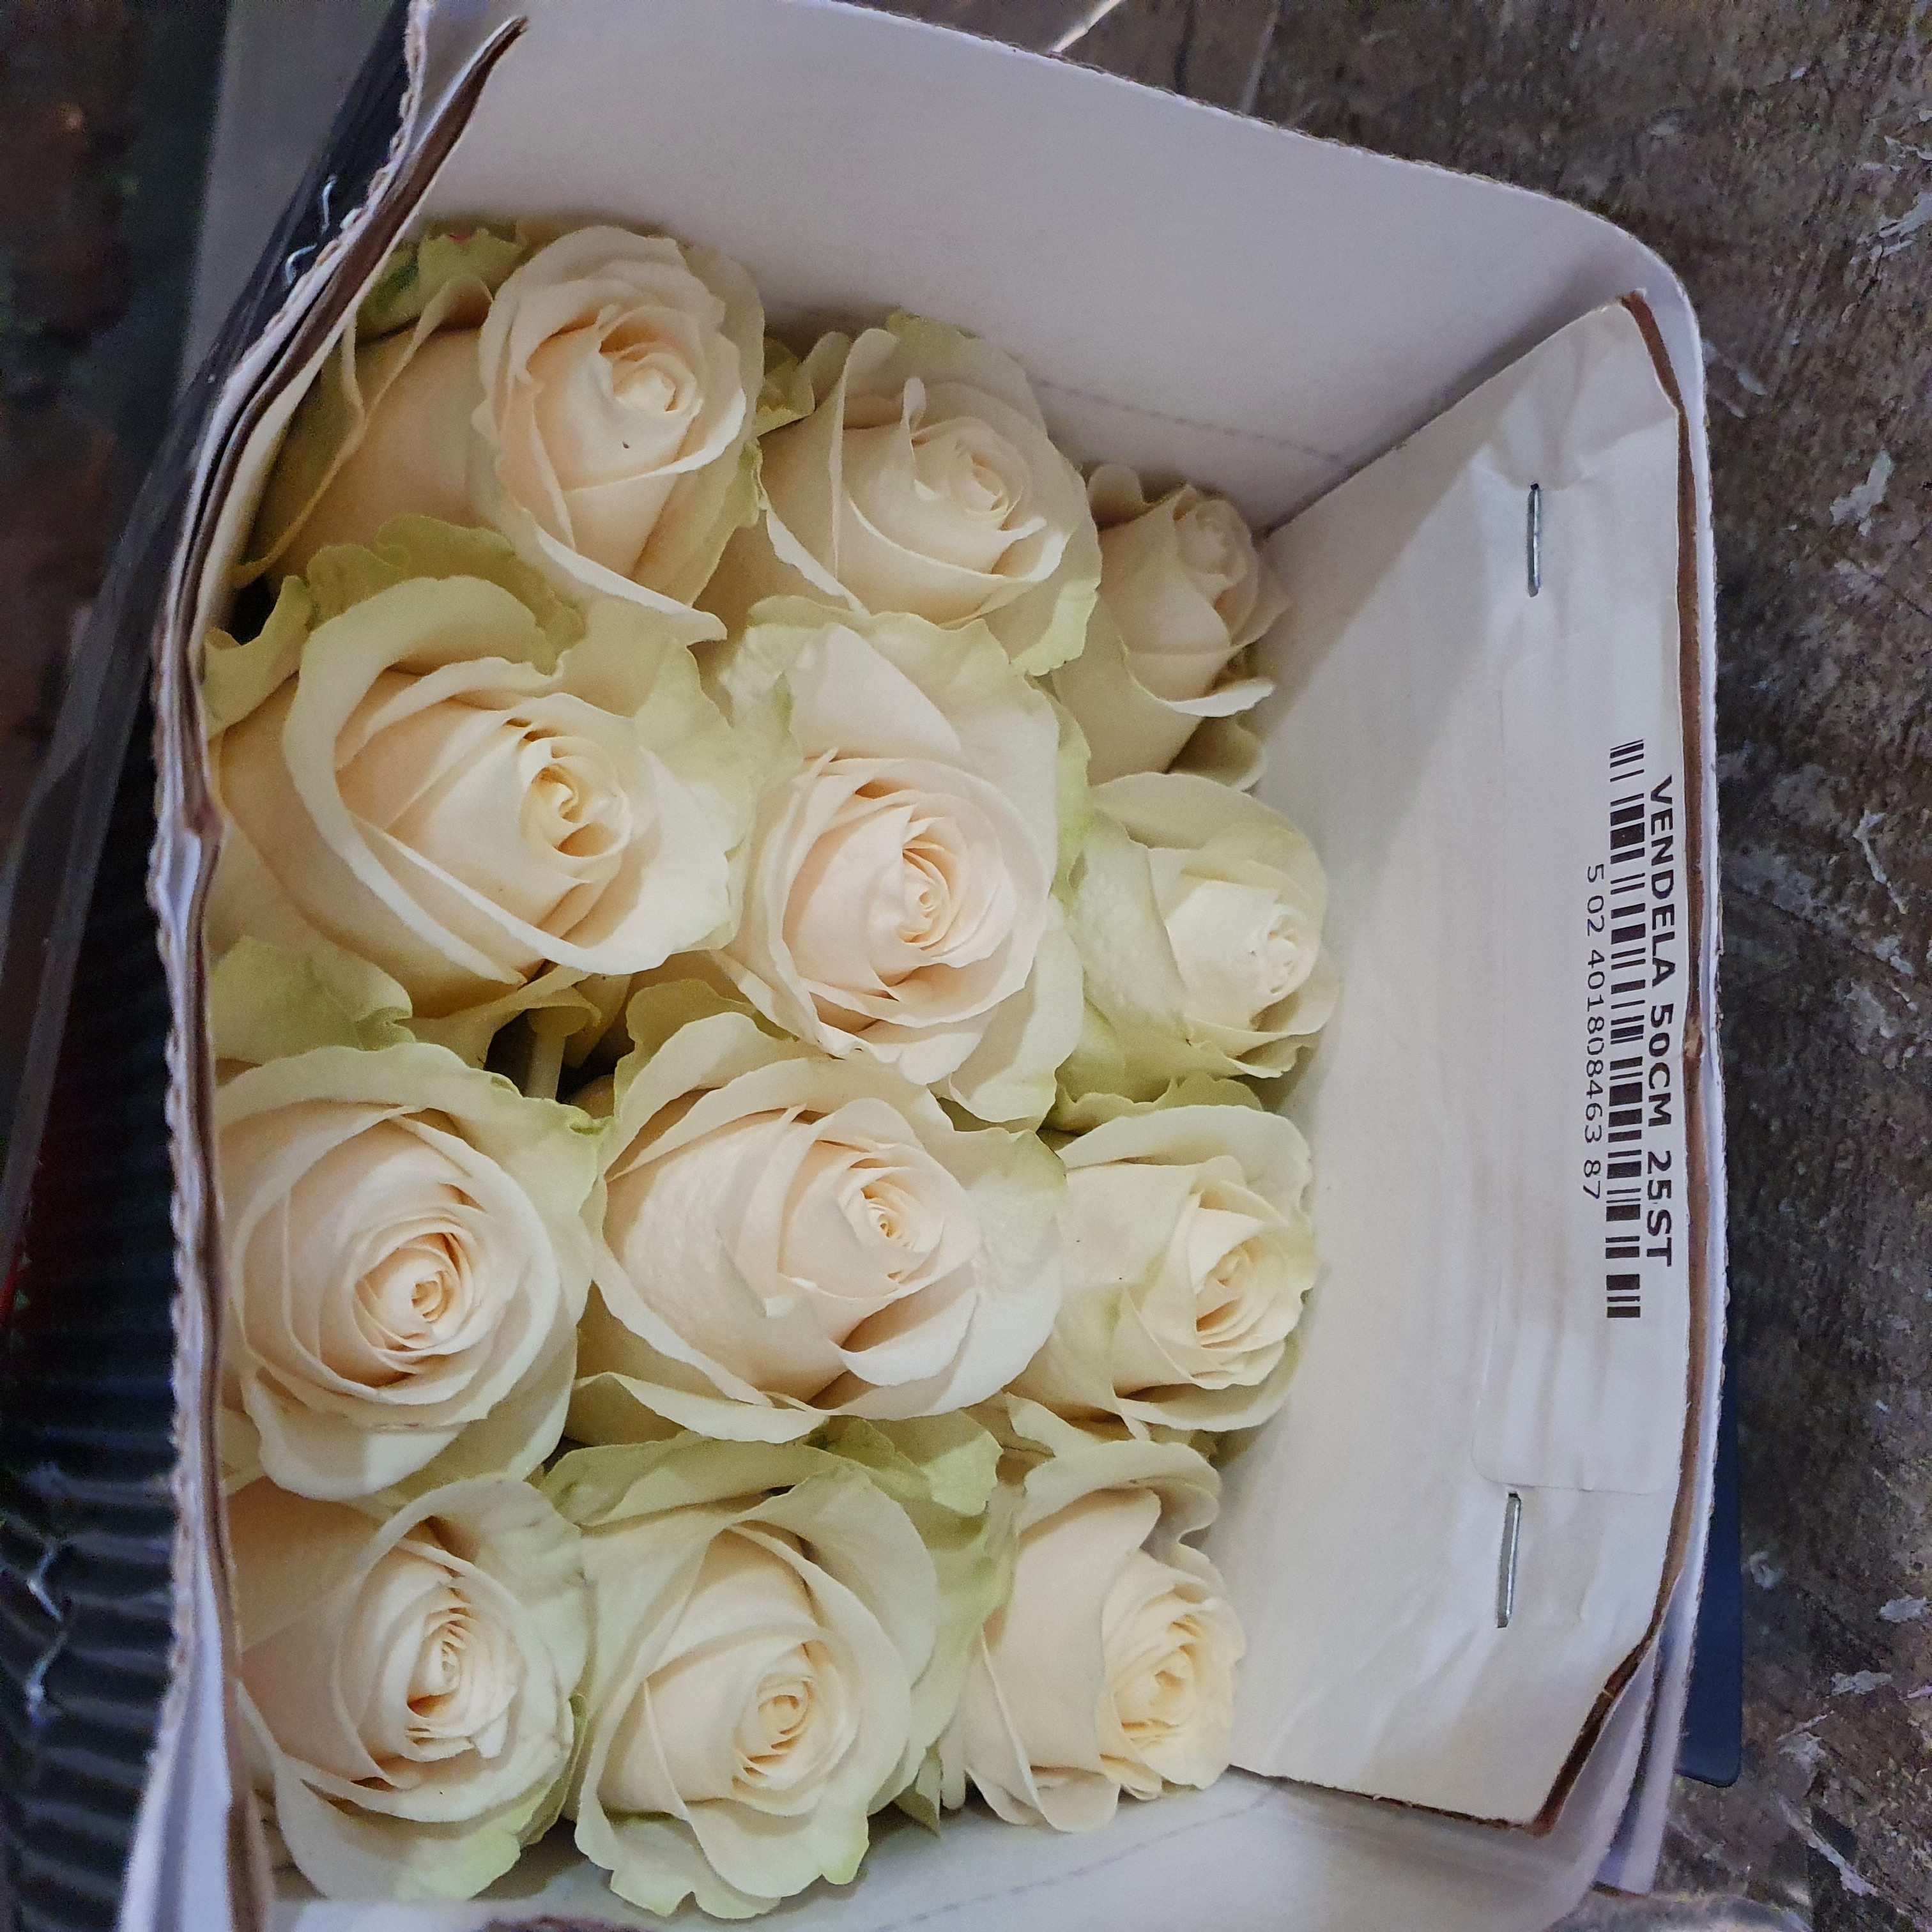 Pqt 25 varas 50 cms. Rosas Blancas | Regalar Flores, Envio de flores, desayunos y regalos a domicilio